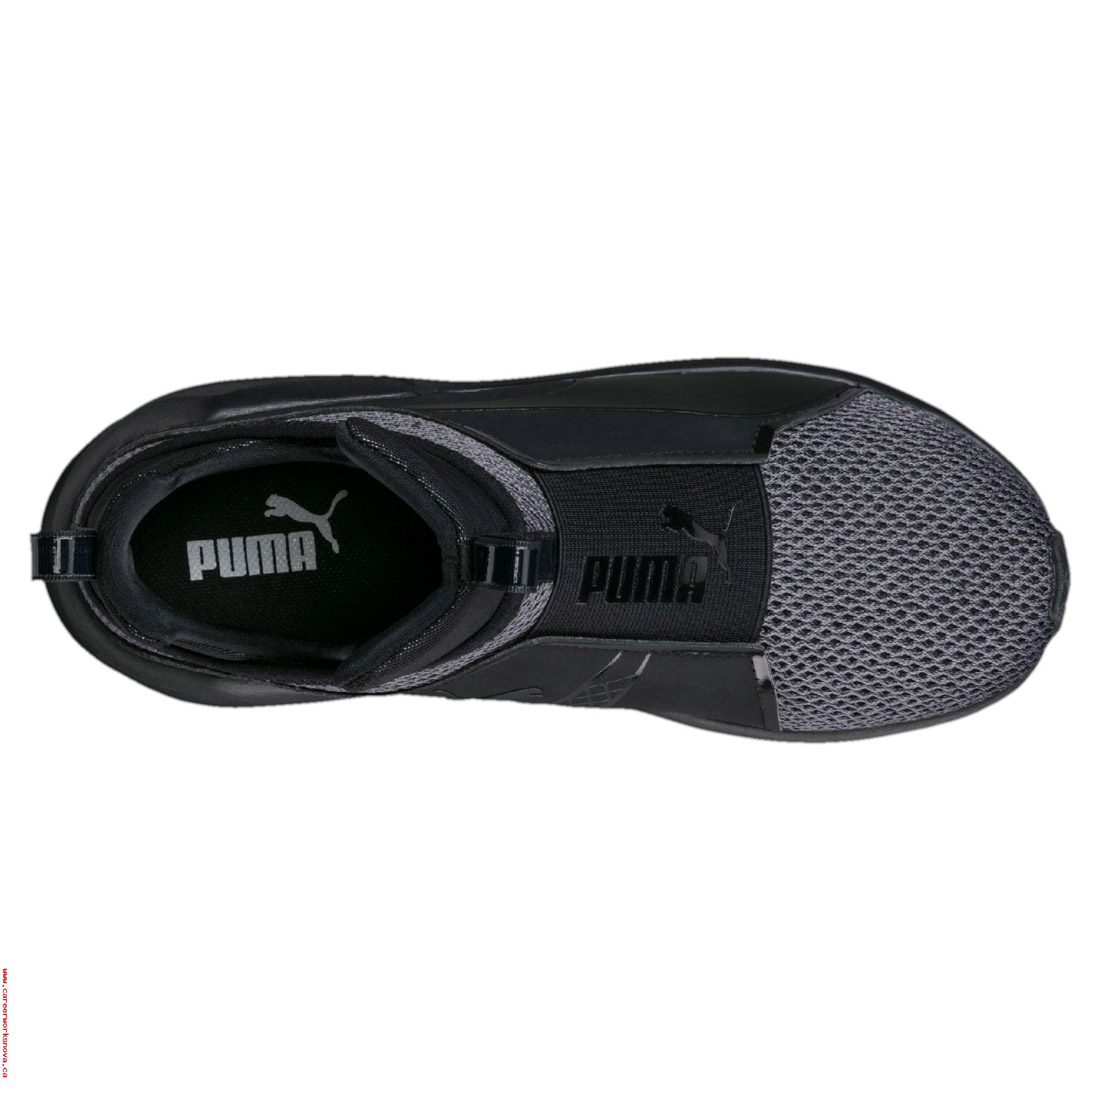 Puma Damen Fierce Knit Hohe Schuhe Sneaker women black 190303 01